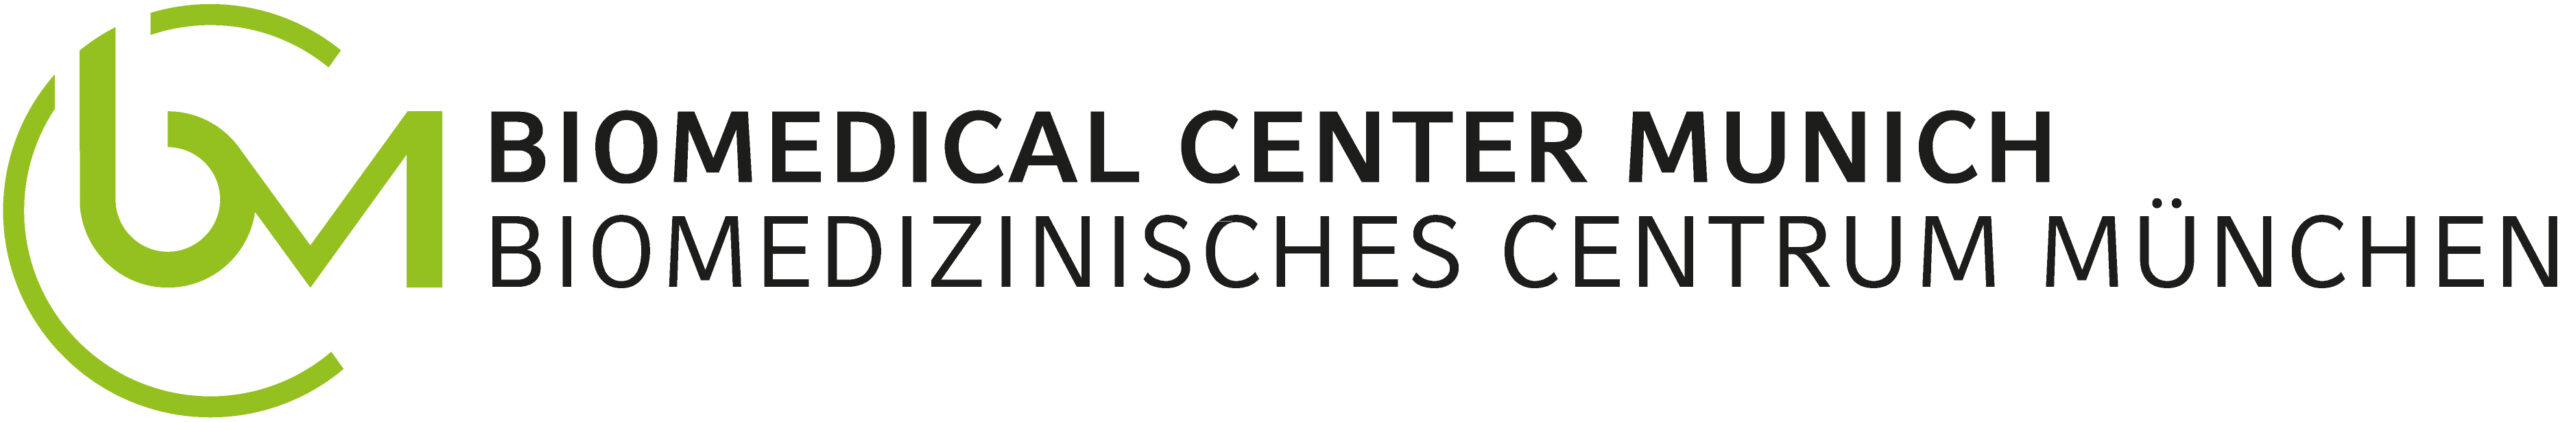 Heinrich-Heine-Universität Düsseldorf Logo